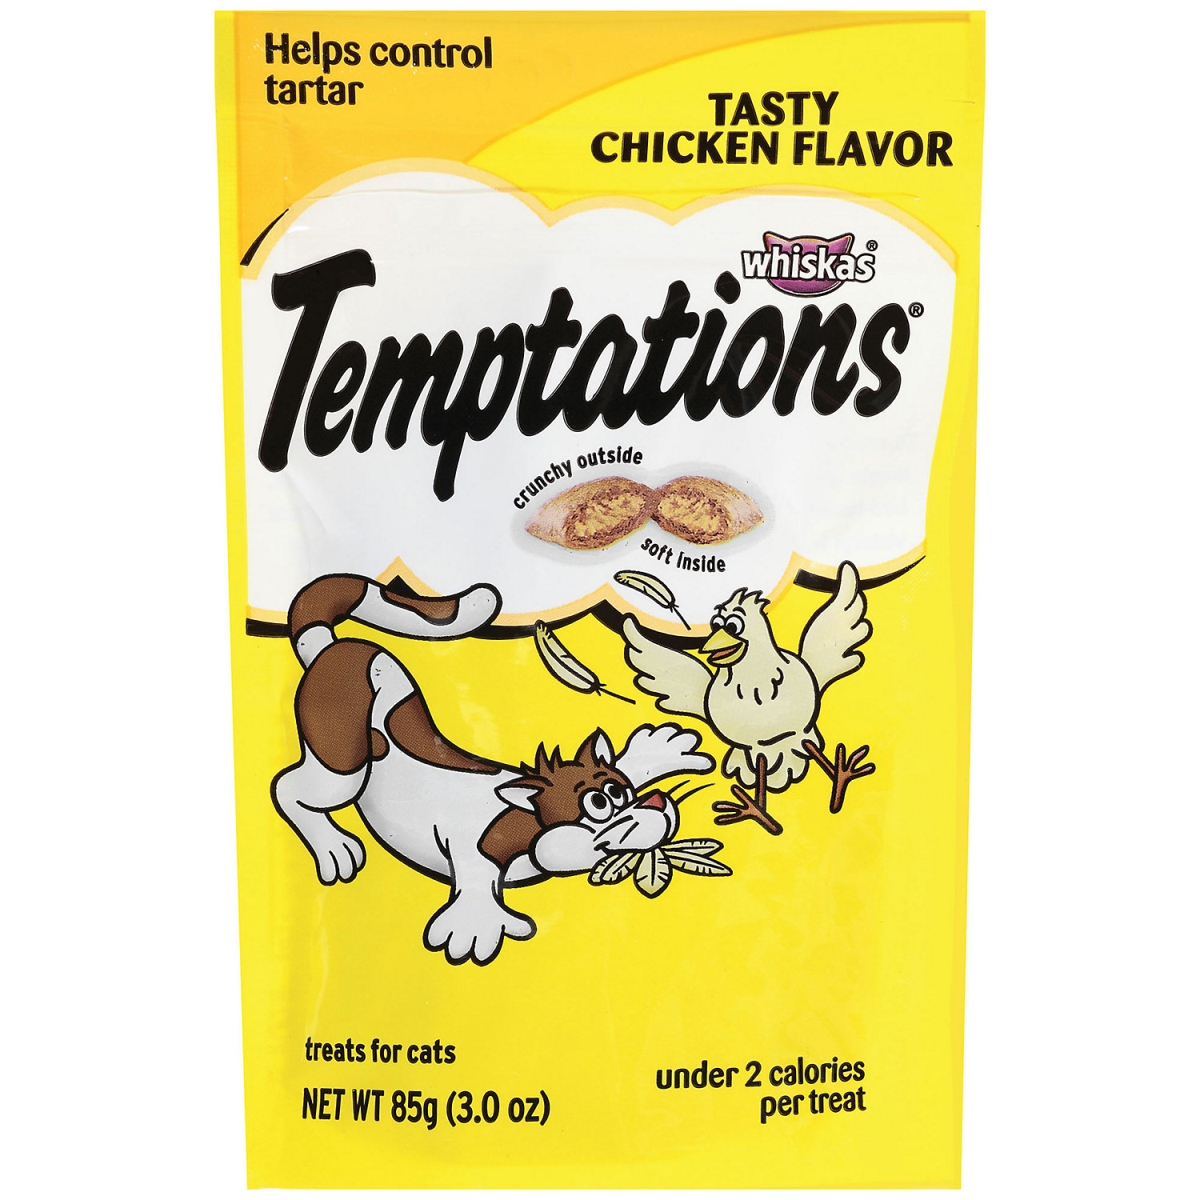 Marspc 798461 3 Oz Whiskas Temptation Tender Chicken Pouch - Pack Of 12